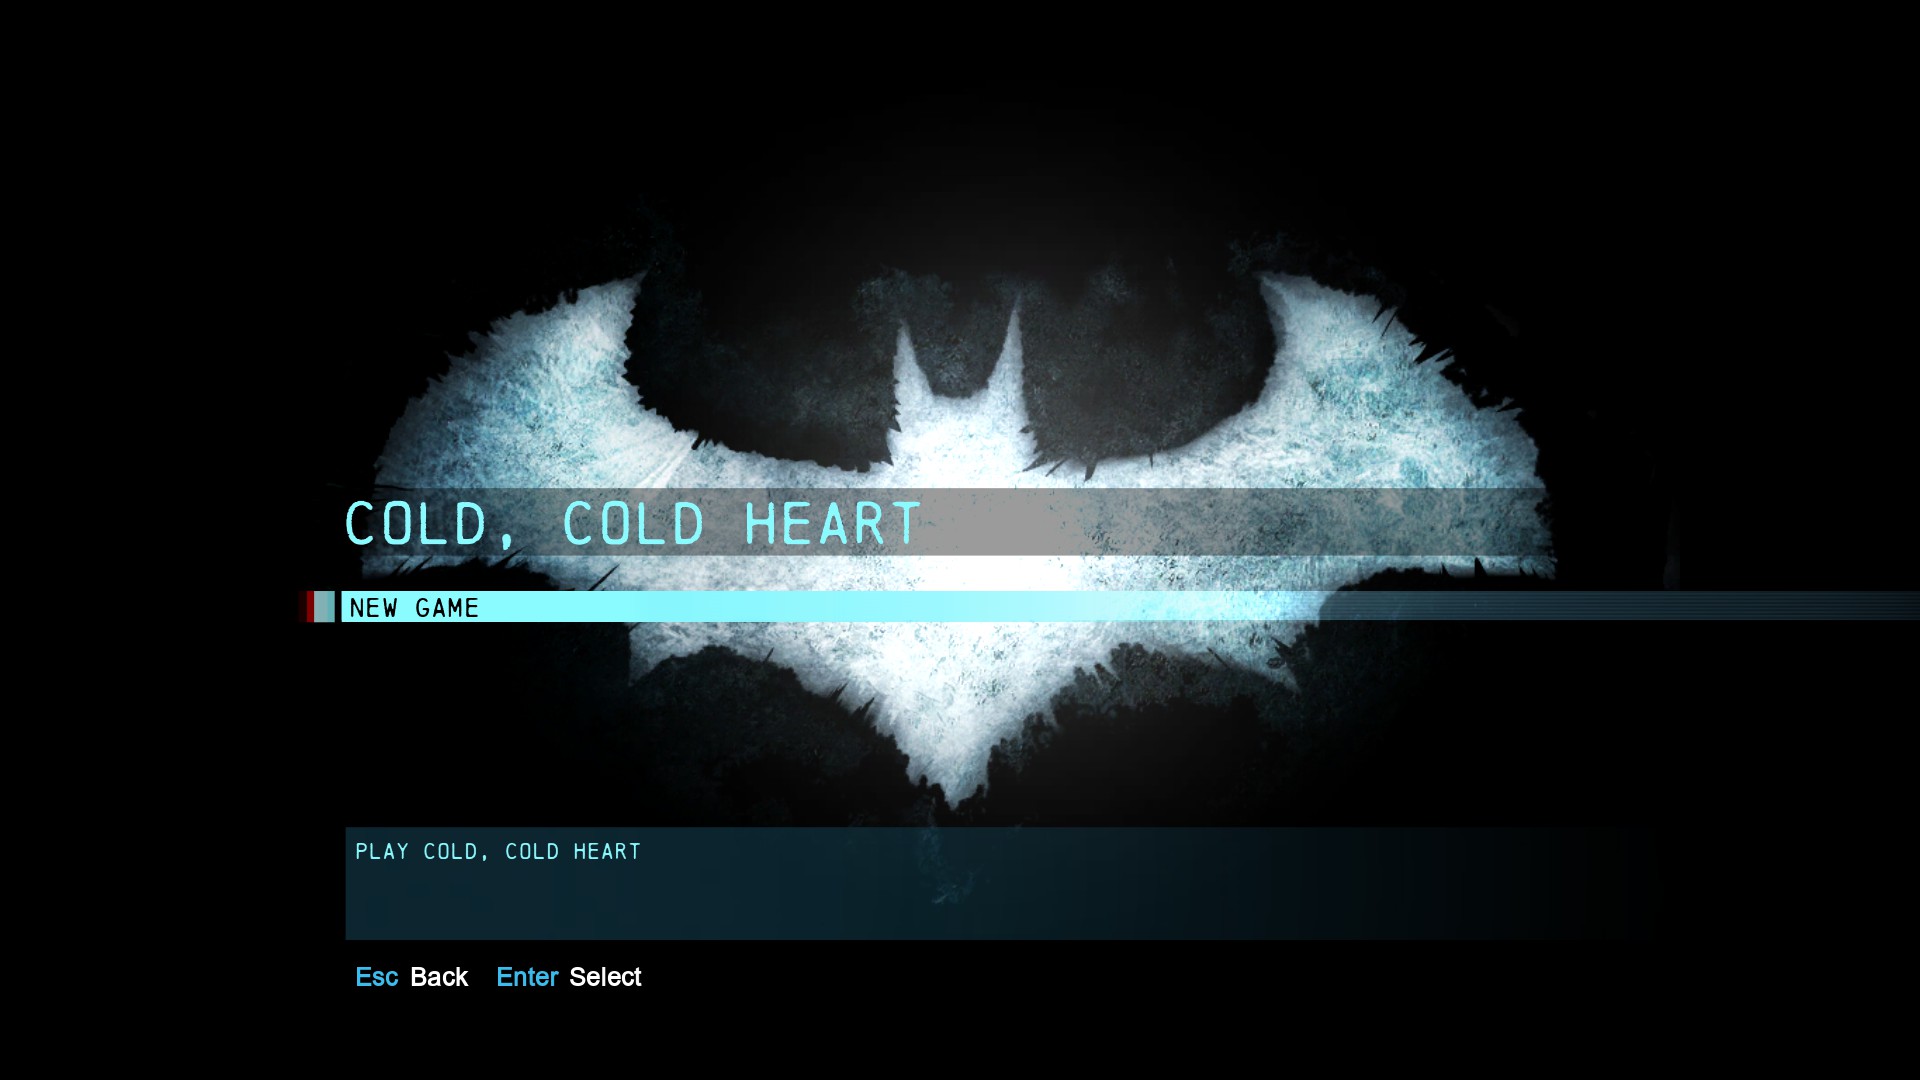 Batman: Arkham Origins - Cold, Cold Heart PC Review